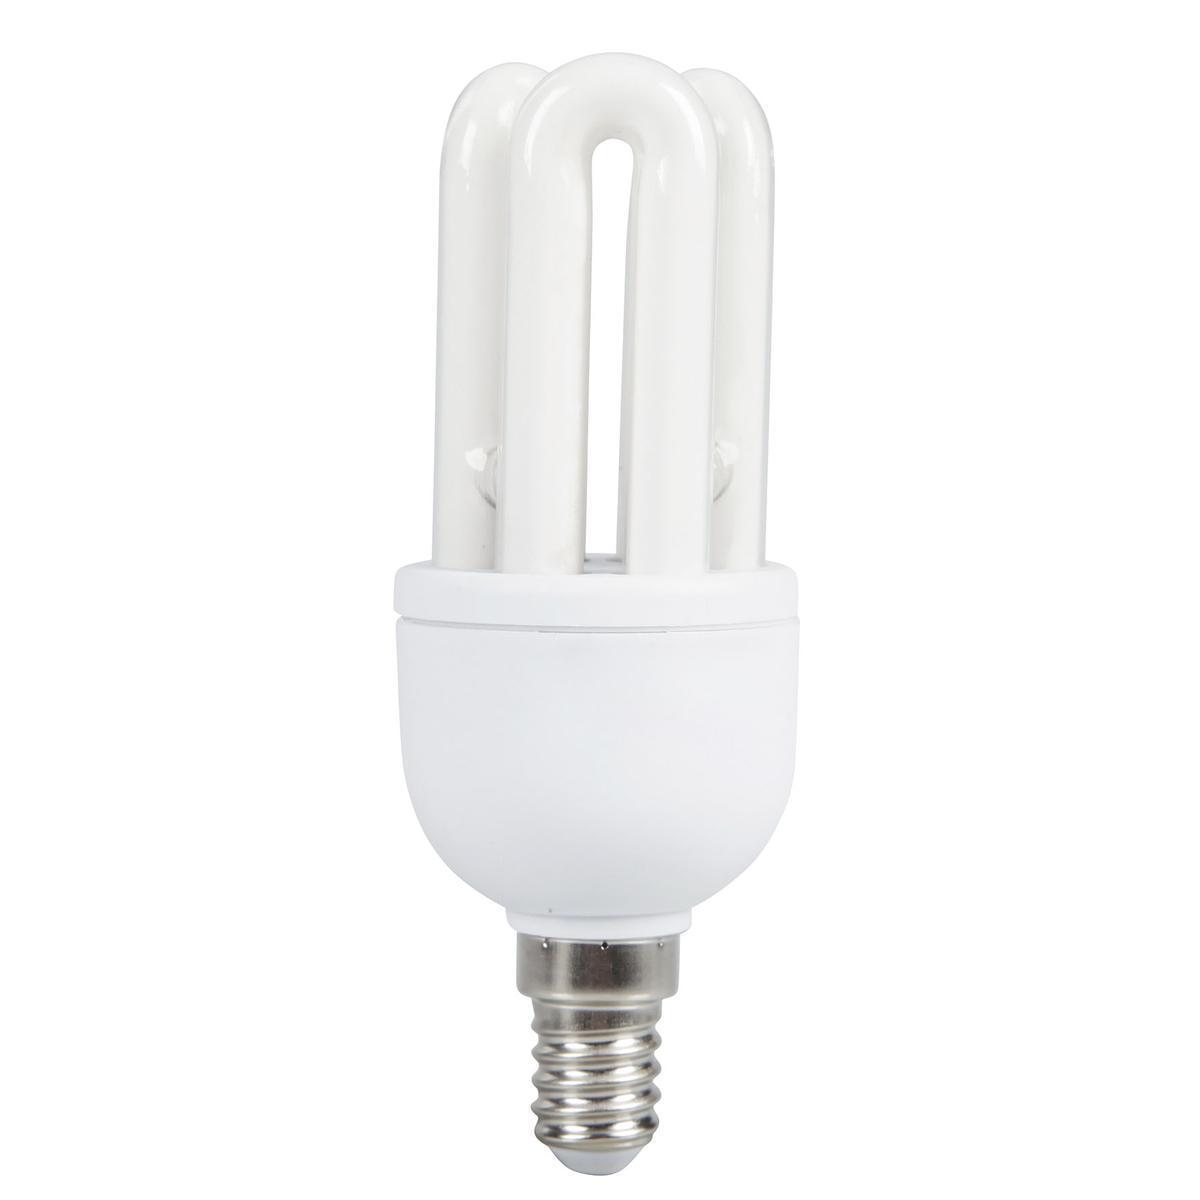 Ampoule à économie d'énergie E14 - 11.5 x 4.5 x 4.5 cm - Transparent